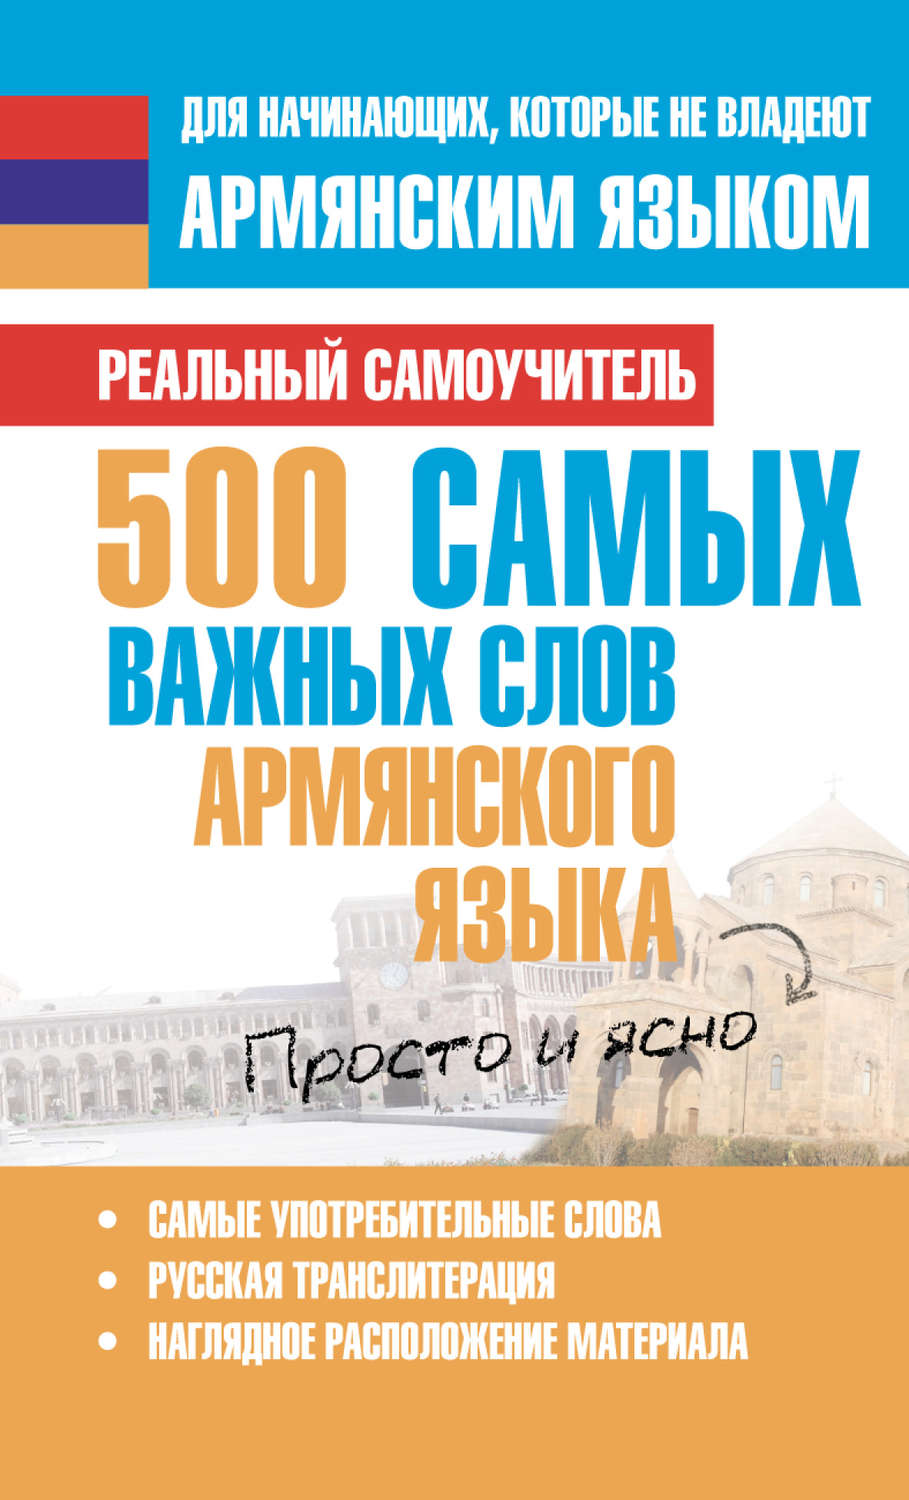 5dd0cd1caf160 - Армянские фразы на русском